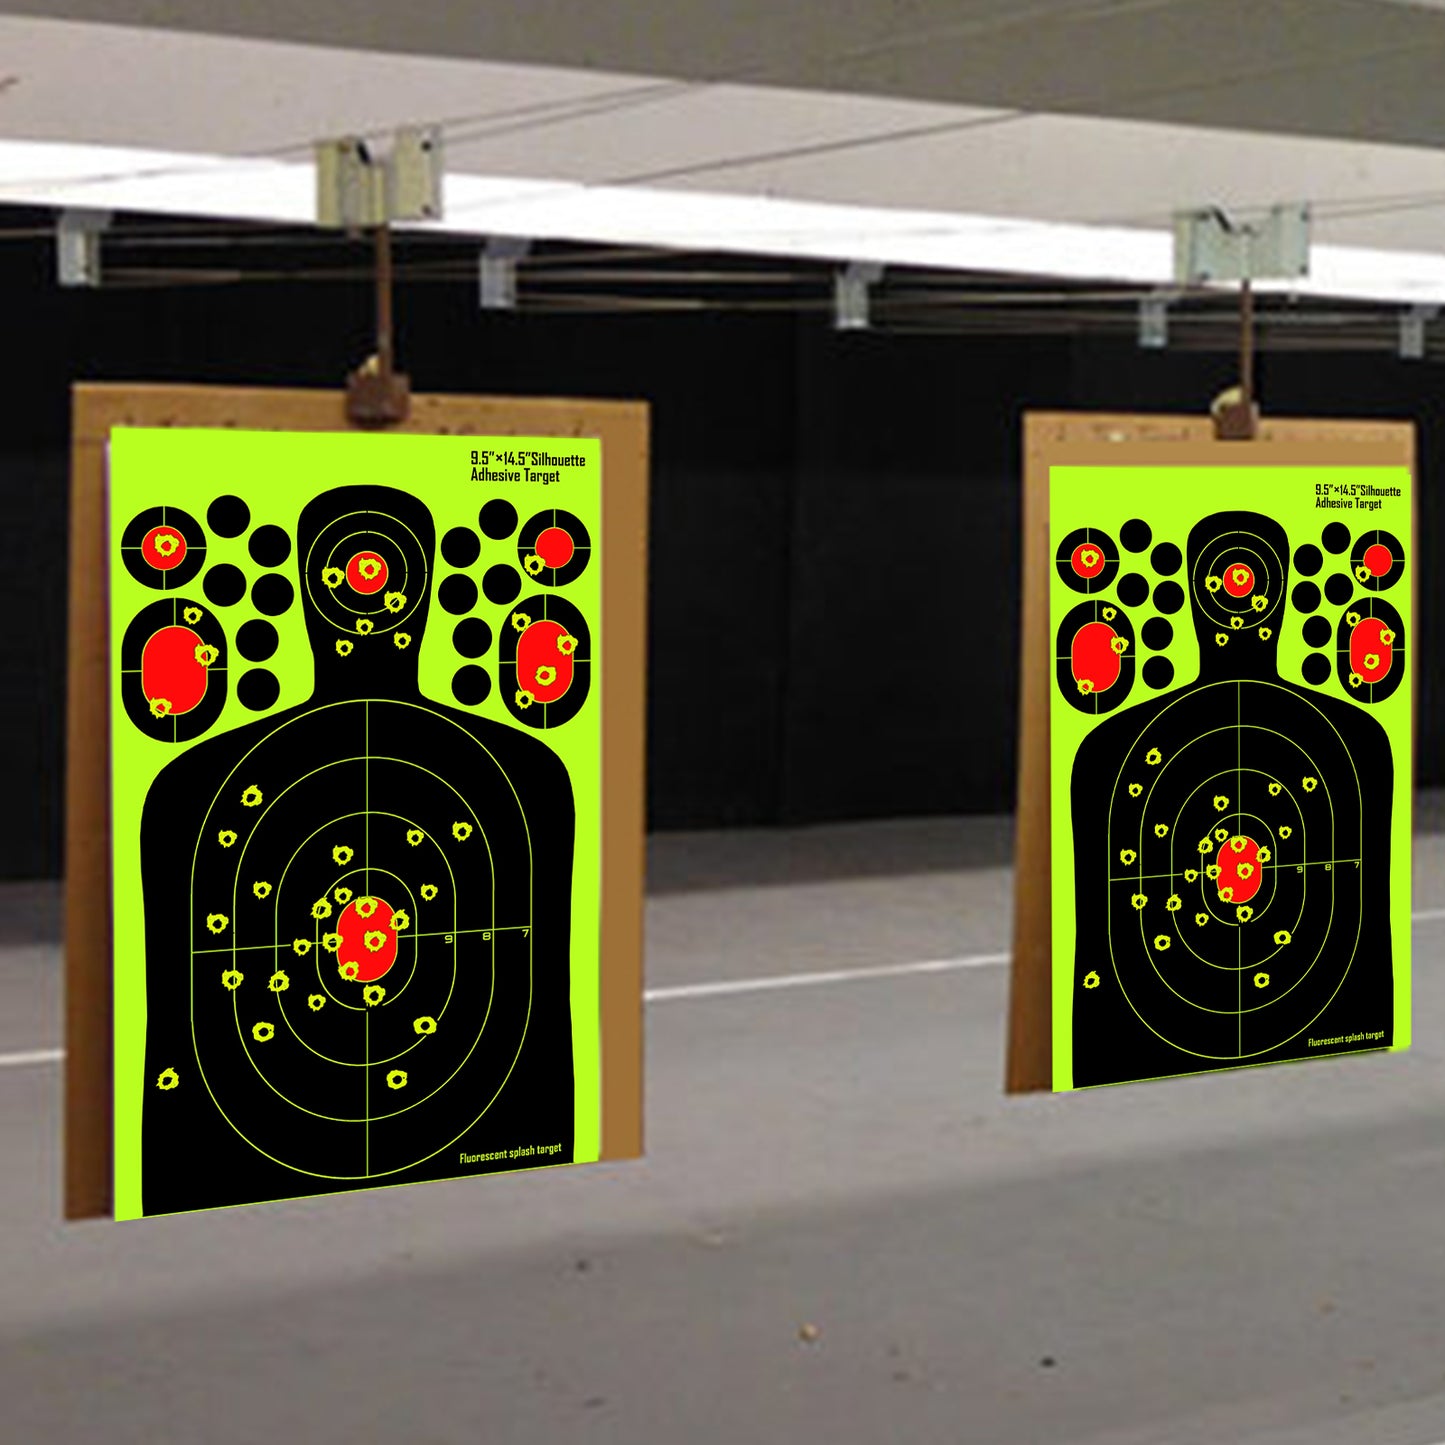 ATFLBOX 50pcs 9.5''x14.5'' Splatter Paper Shooting Target Stand for Outdoor, Range BB Gun, Airsoft, Air Gun